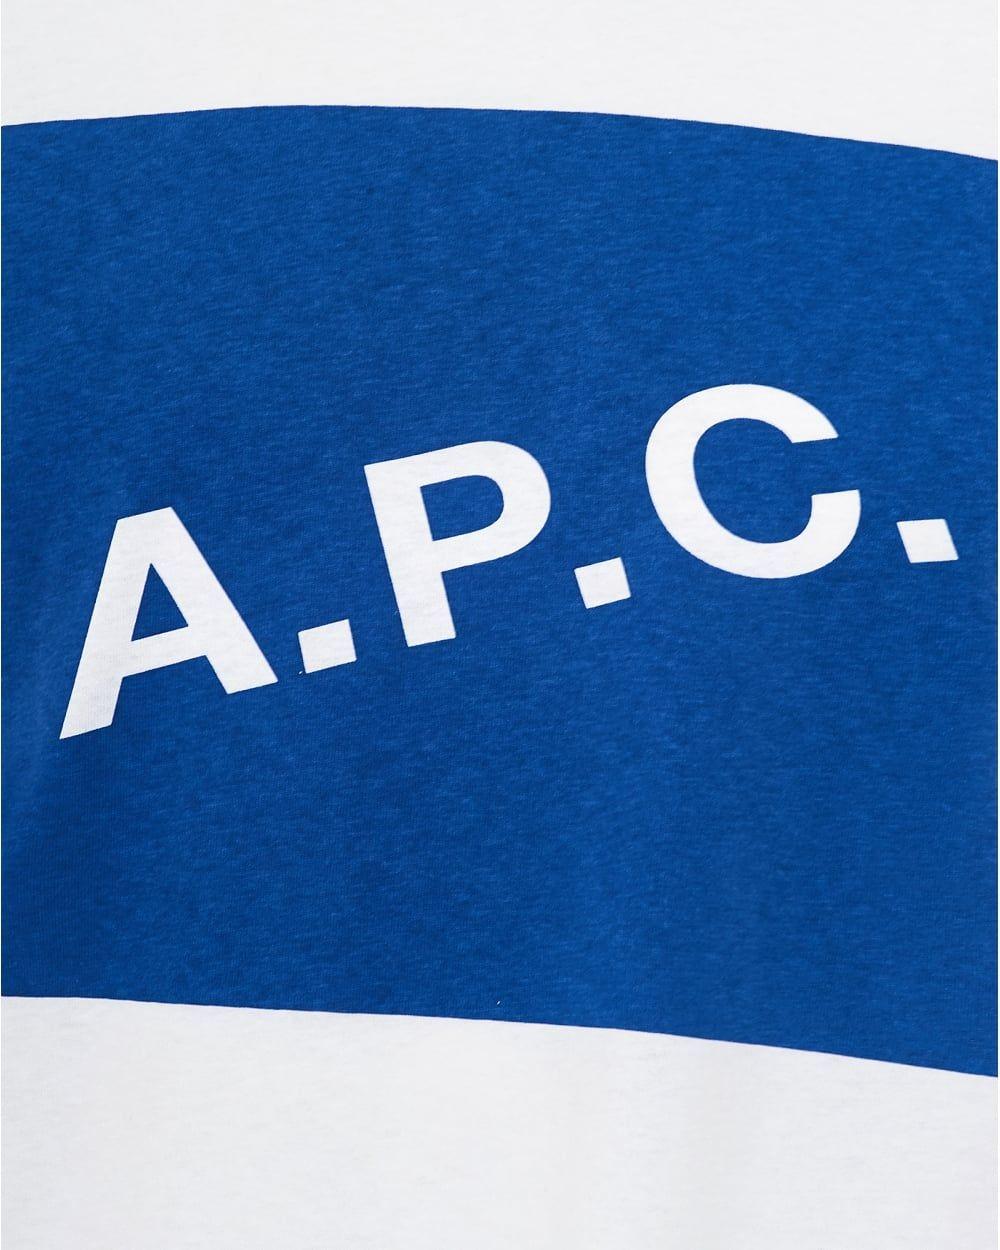 Box in Blue P Logo - A.P.C. Mens Kraft T Shirt, A.P.C. Box Logo White Tee